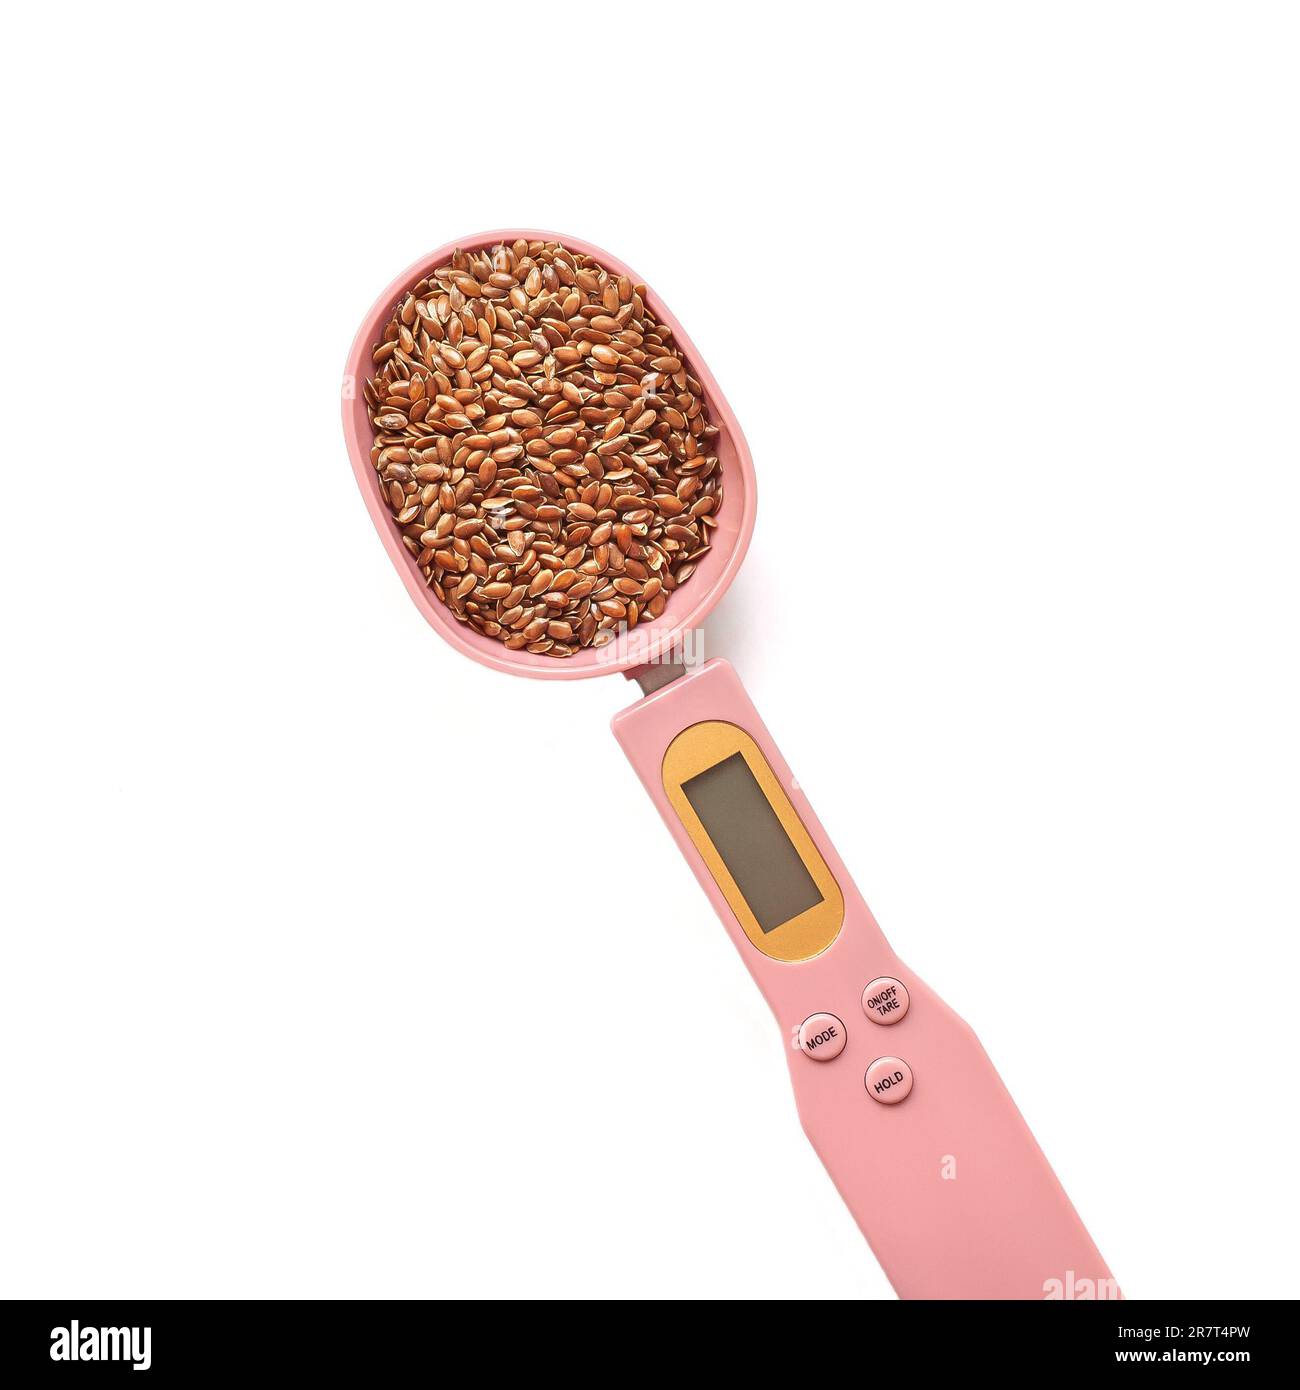 Braune Leinsamen in einem rosafarbenen elektronischen Messlöffel auf weißem Hintergrund. Superfoods, gesunde Ernährung Konzept und Keto Diät Stockfoto